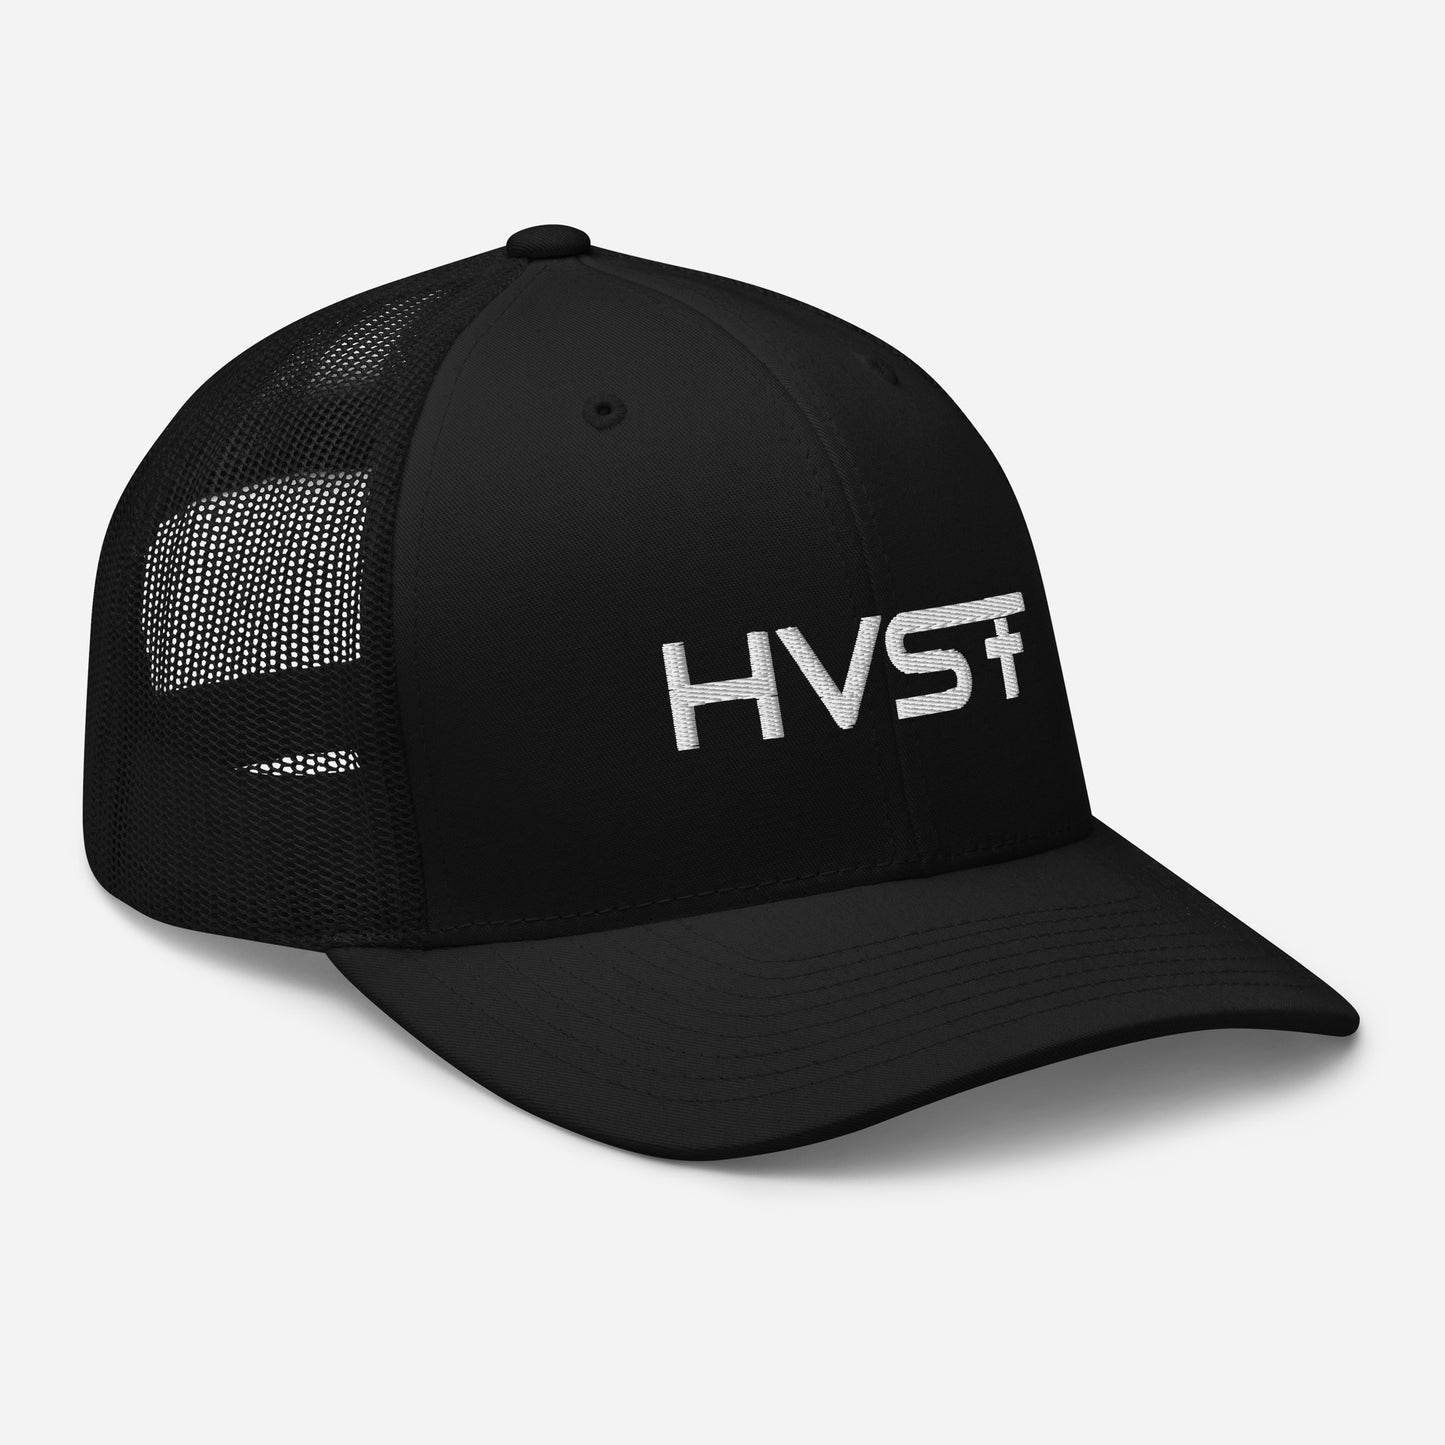 HVST Trucker Hat